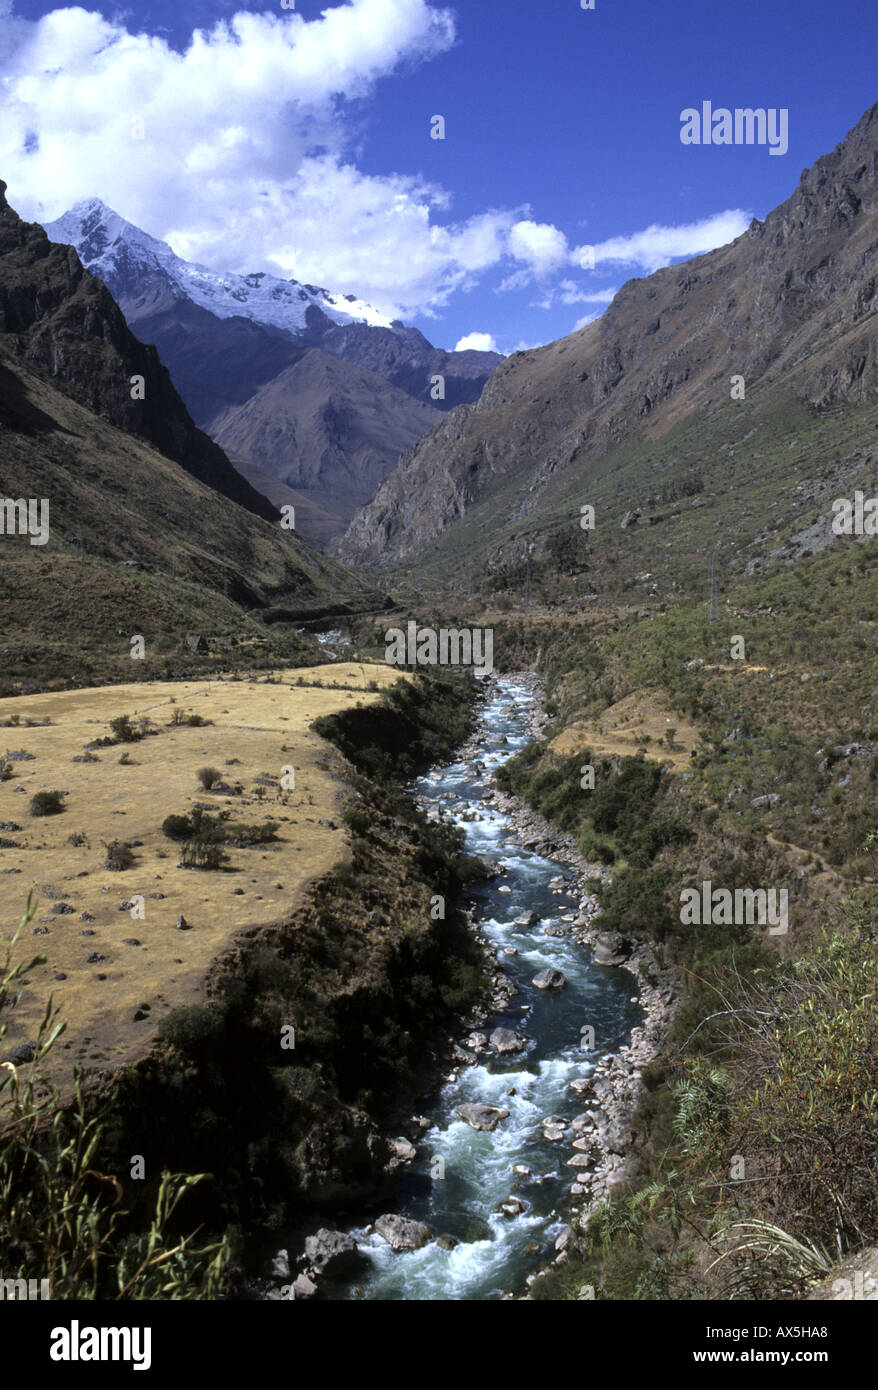 Machu Picchu, Perù. Inca Trail passando attraverso la valle del fiume Lluluchayoc. Foto Stock